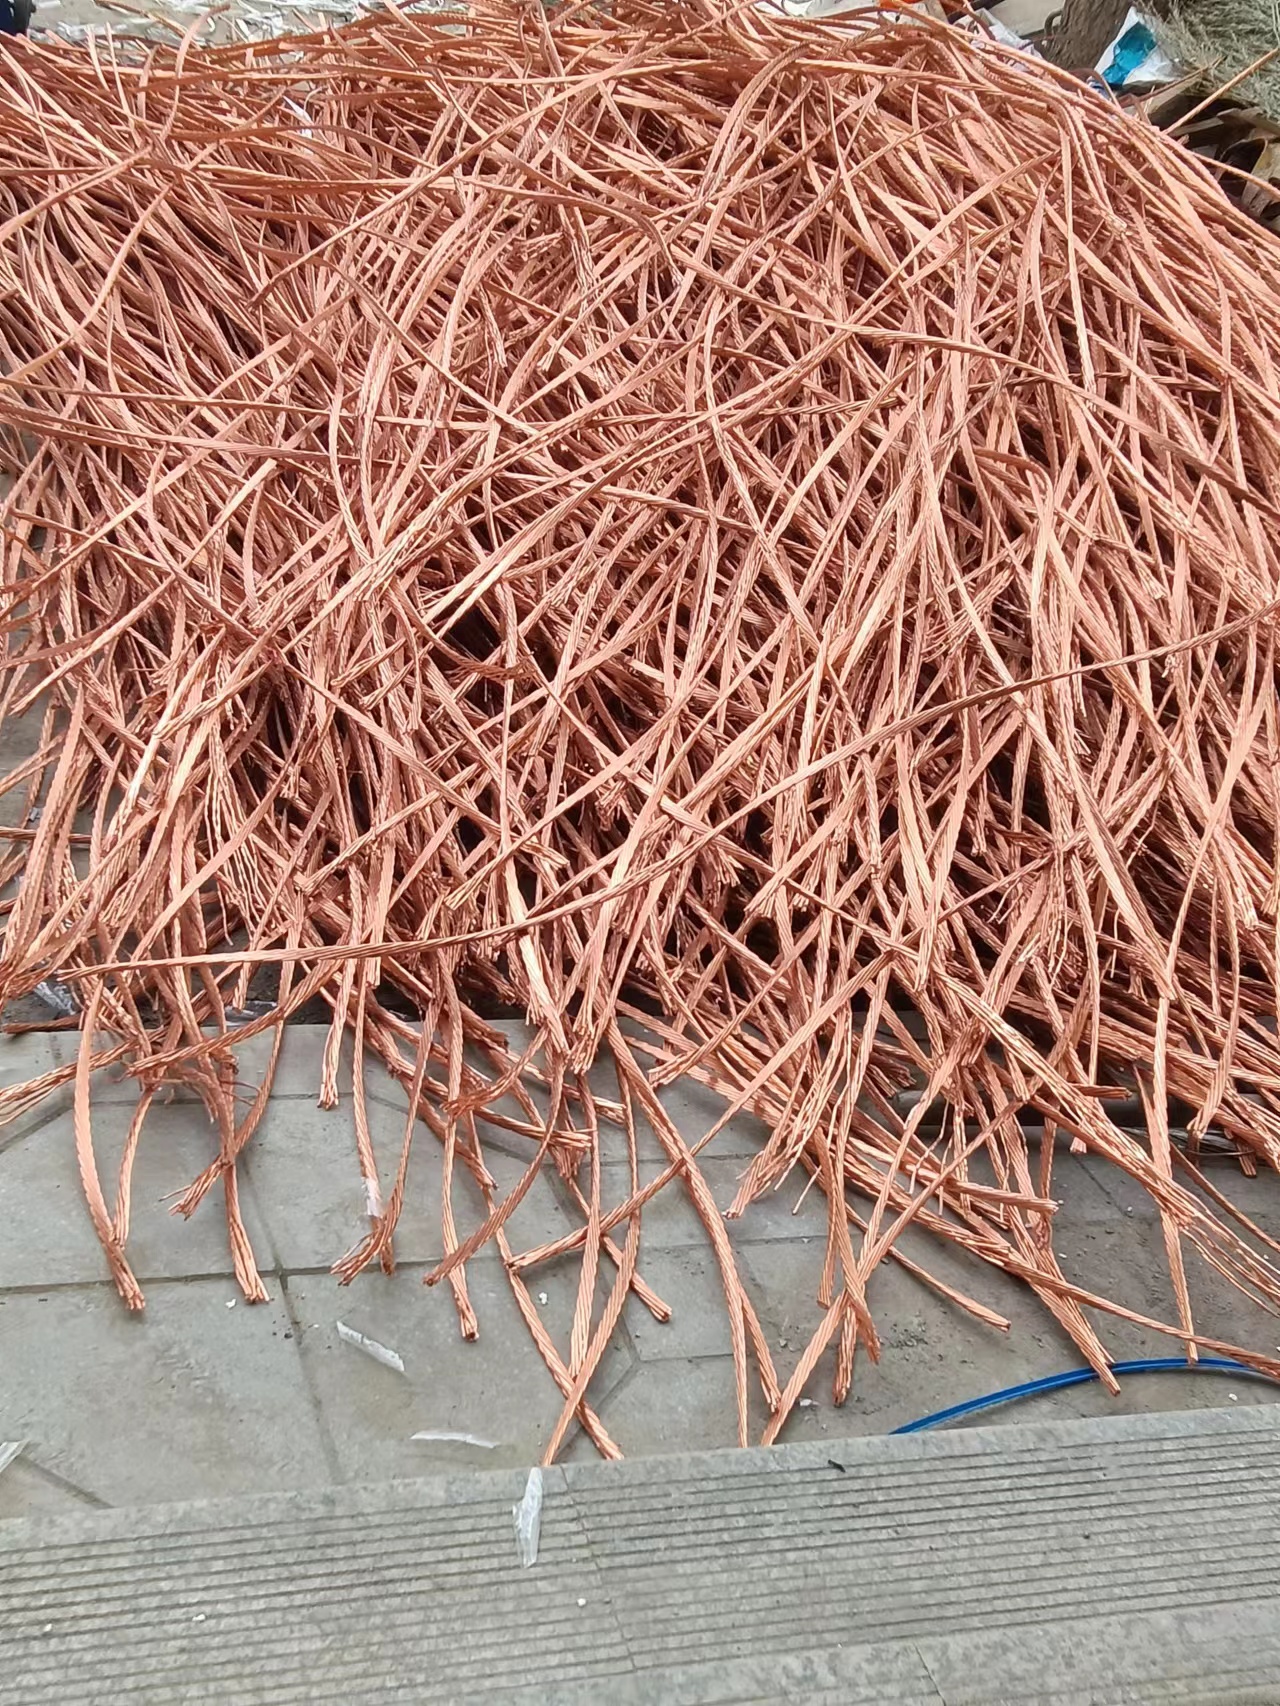 湖南株洲市电线电缆回收价格 ，废旧电线电缆回收价格，钢芯铝绞线回收价格。图片